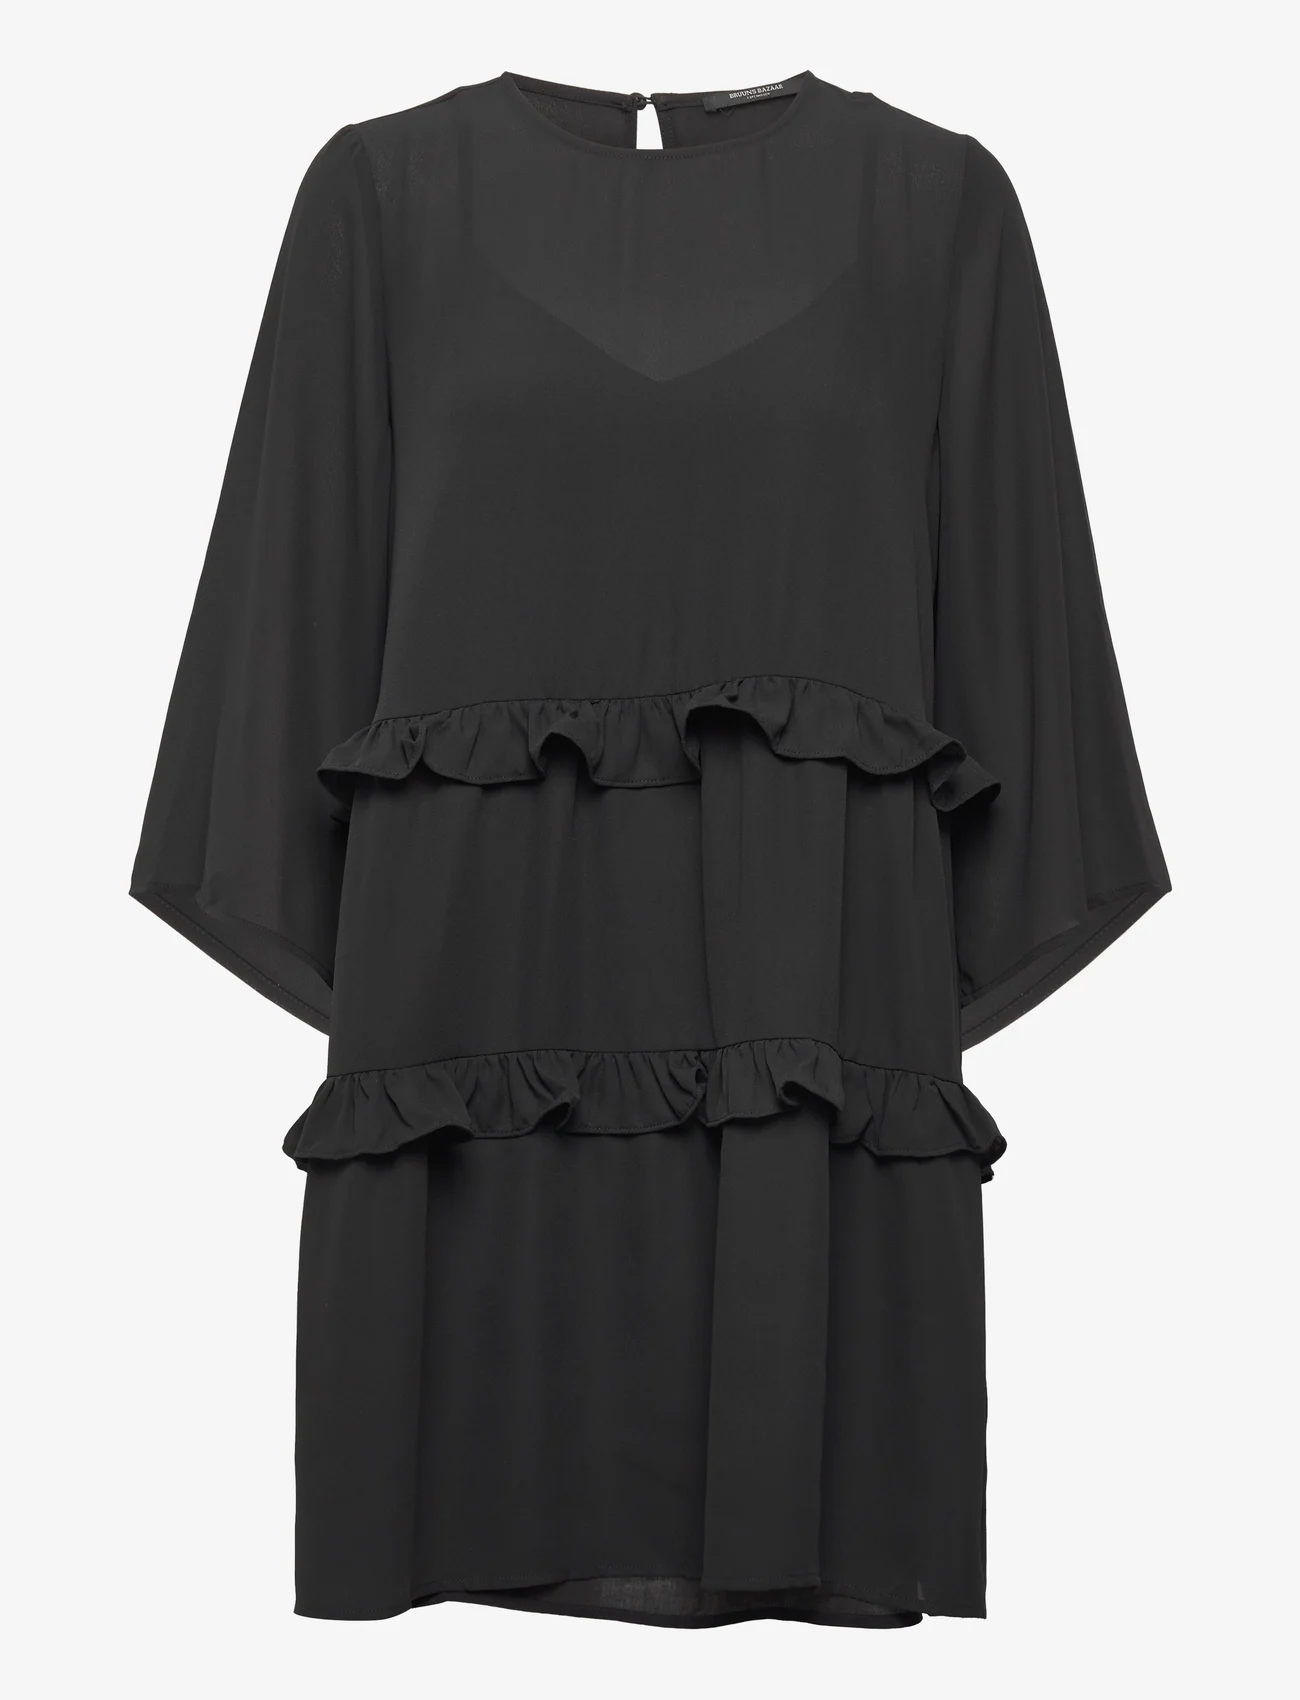 Bruuns Bazaar - Ellora Kristelle dress BZ - kurze kleider - black - 0